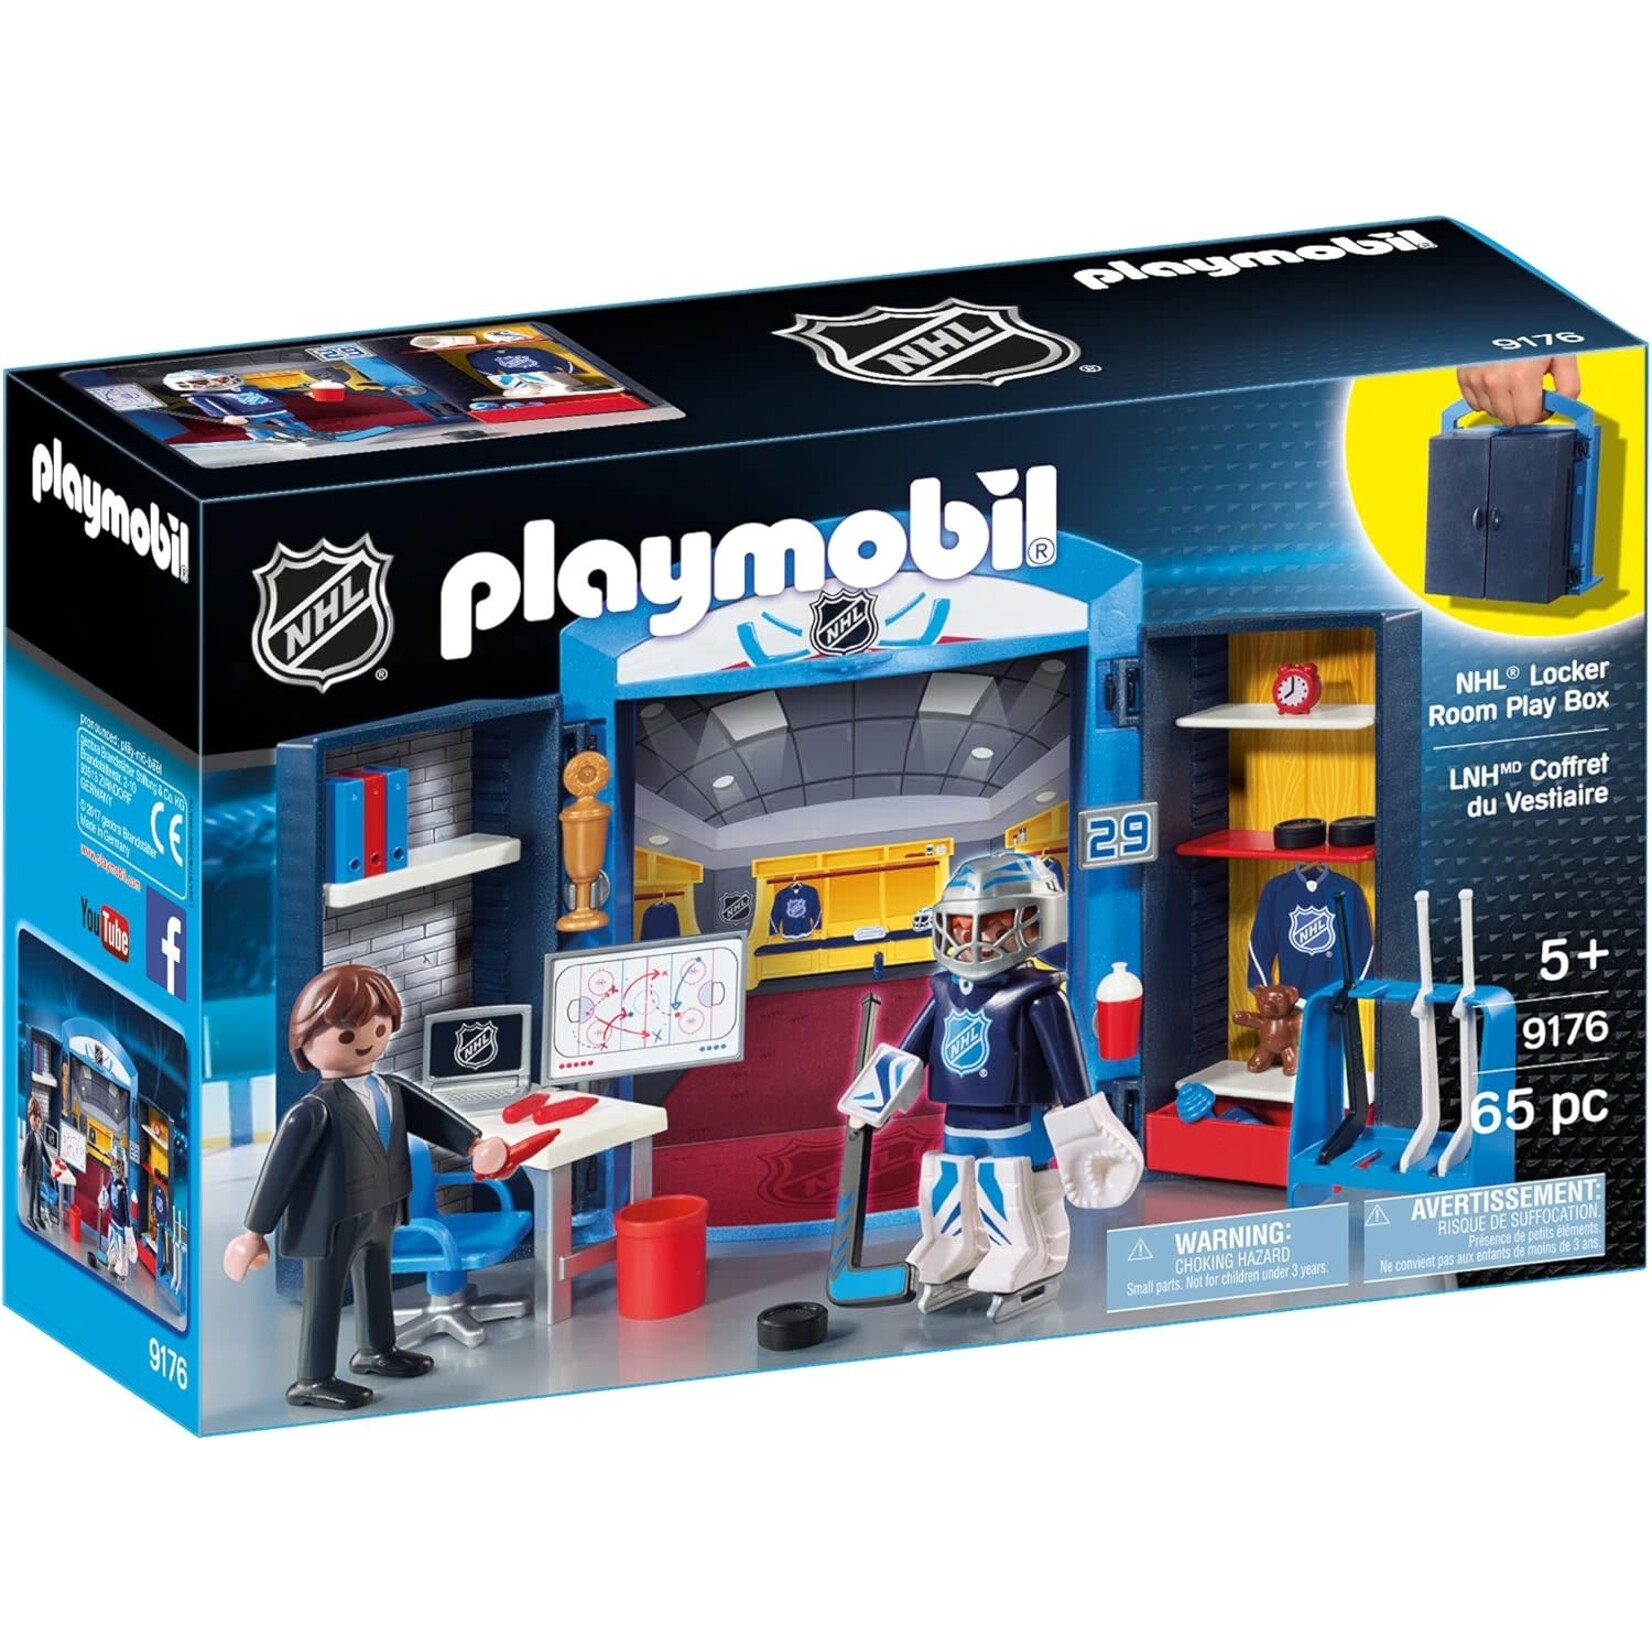 Playmobil NHL Locker Room Play Box